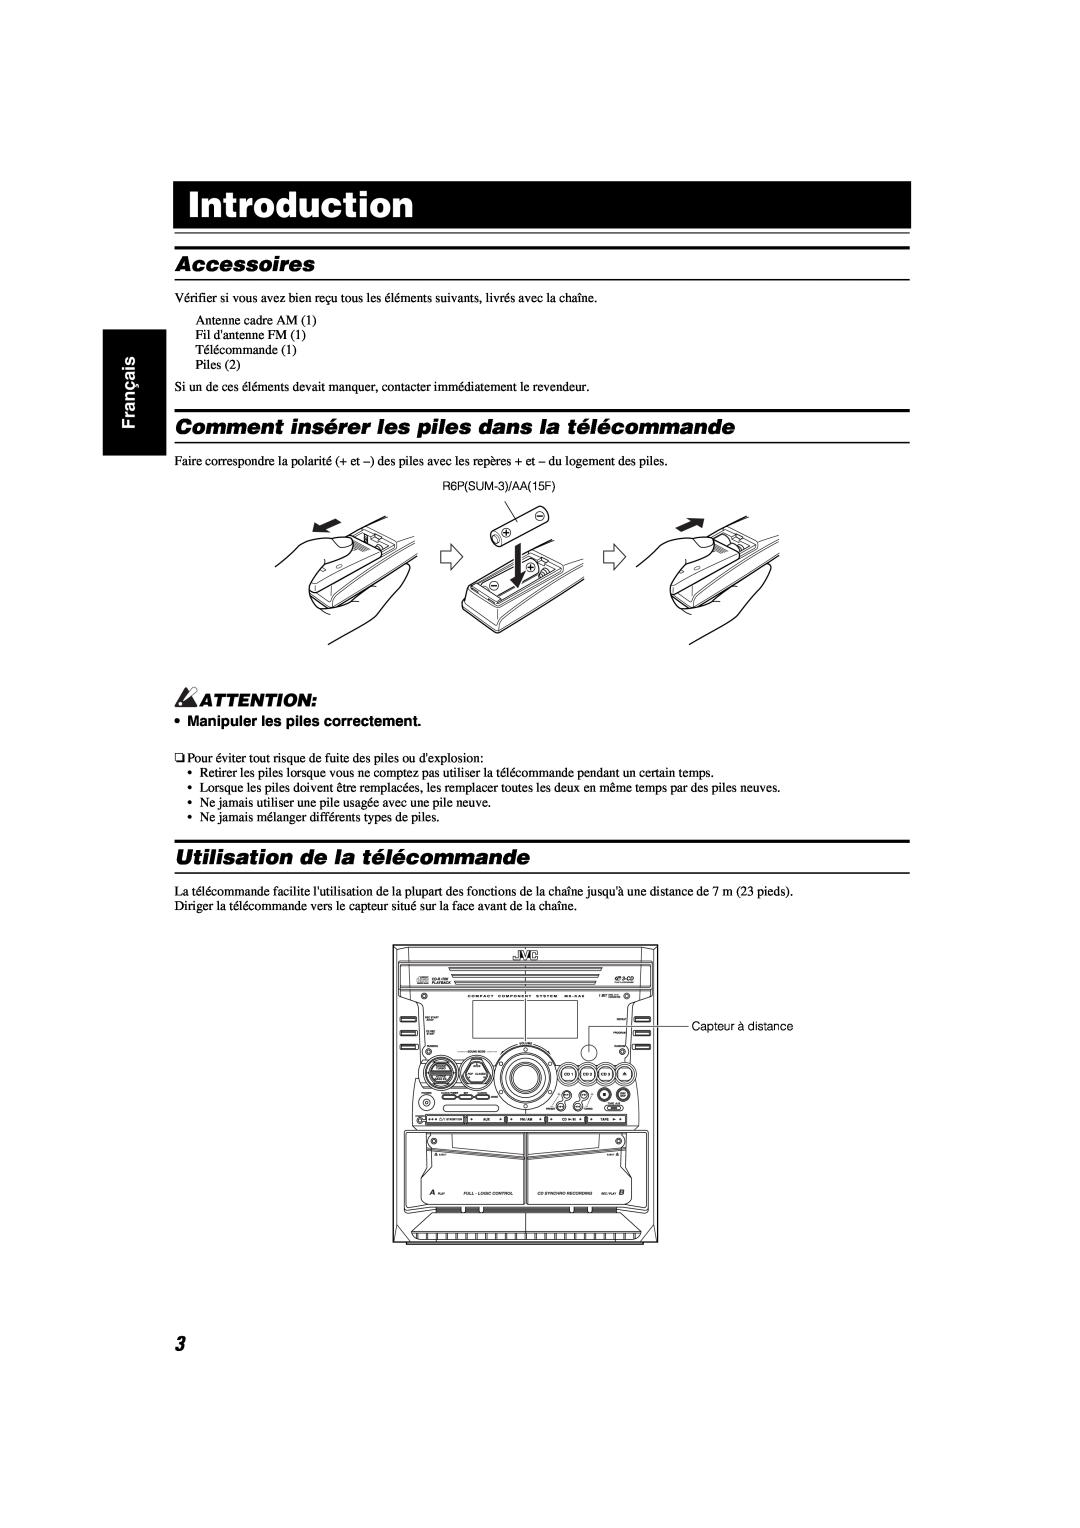 JVC MX-KA6 manual Accessoires, Comment insérer les piles dans la télécommande, Utilisation de la télécommande, Introduction 